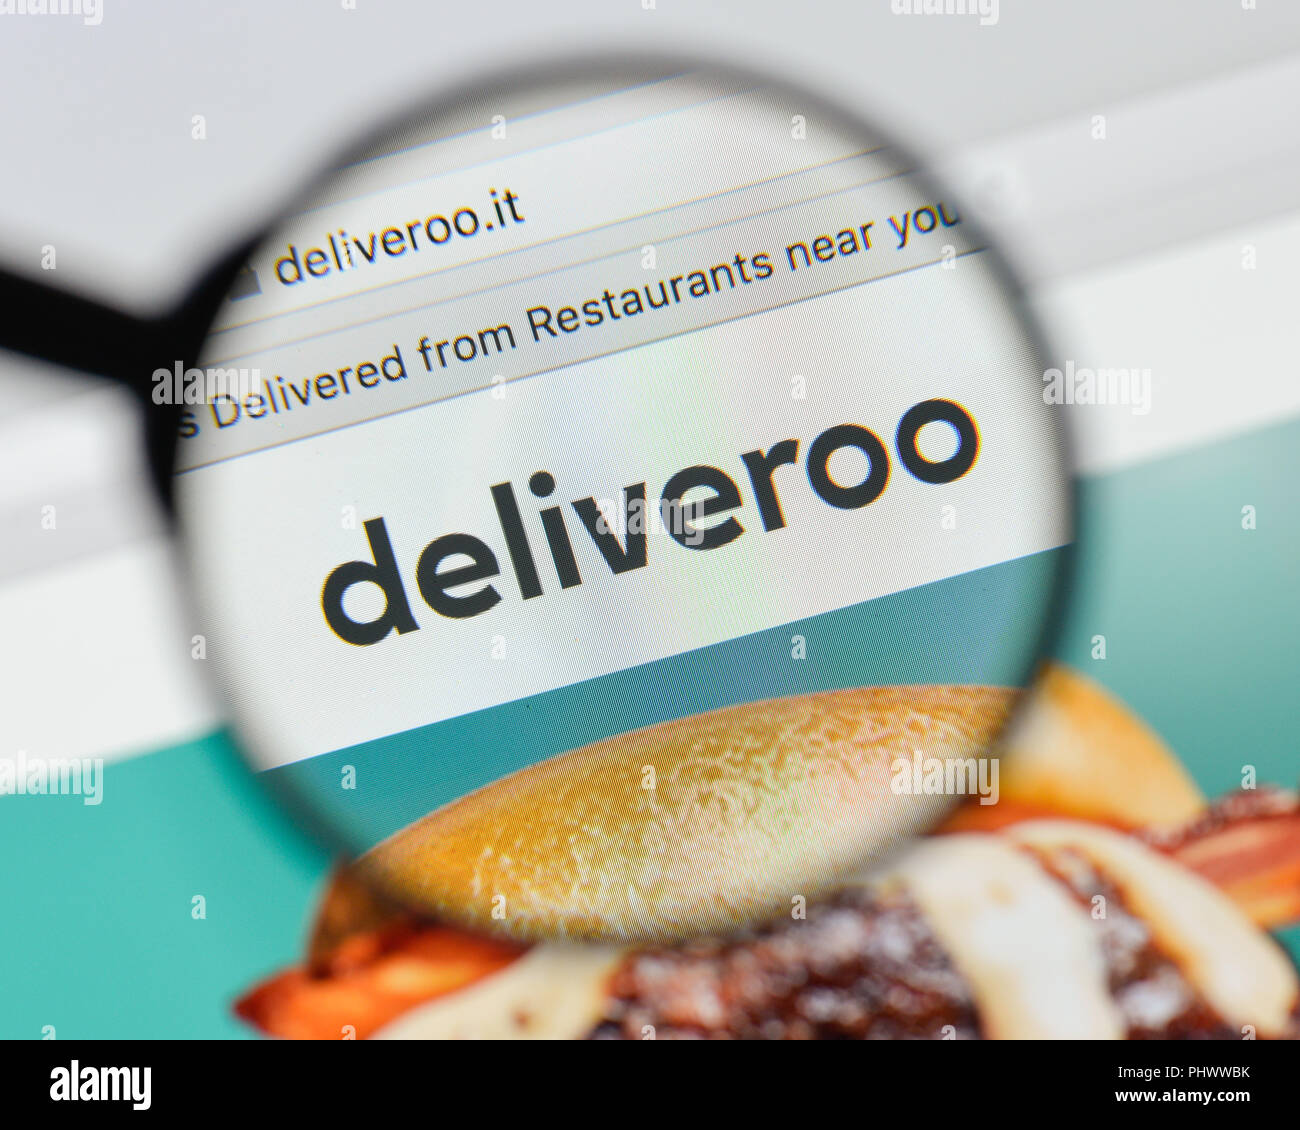 Milan, Italie - 20 août 2018 : Deliveroo Page d'accueil du site. Deliveroo logo visible. Banque D'Images